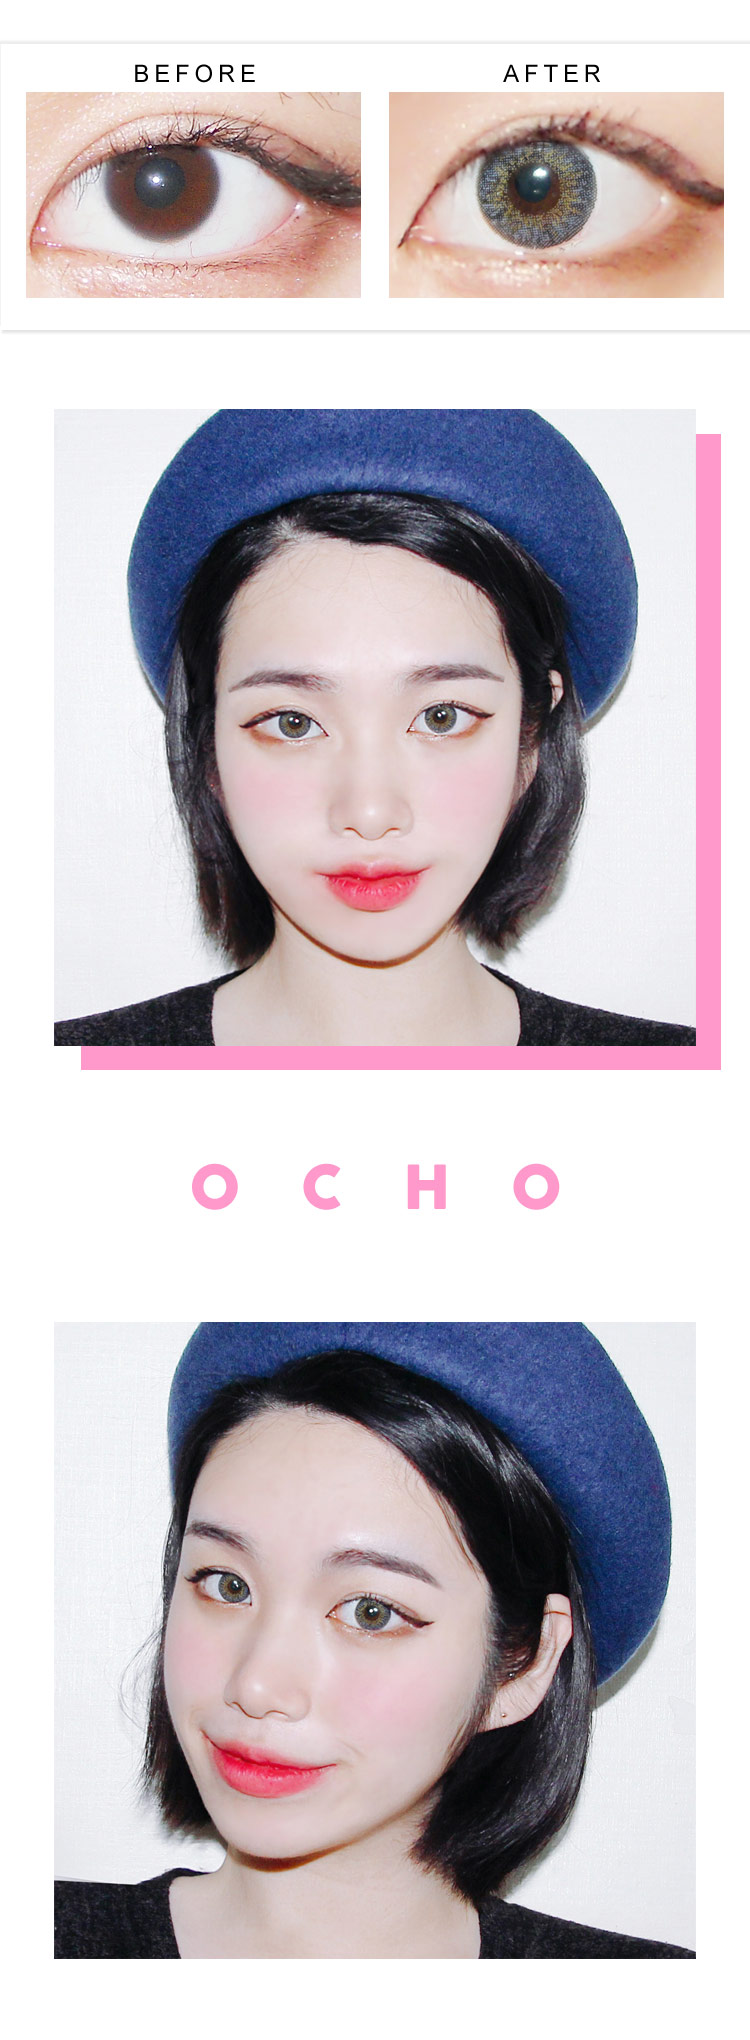 CNC / OCHO GRAY